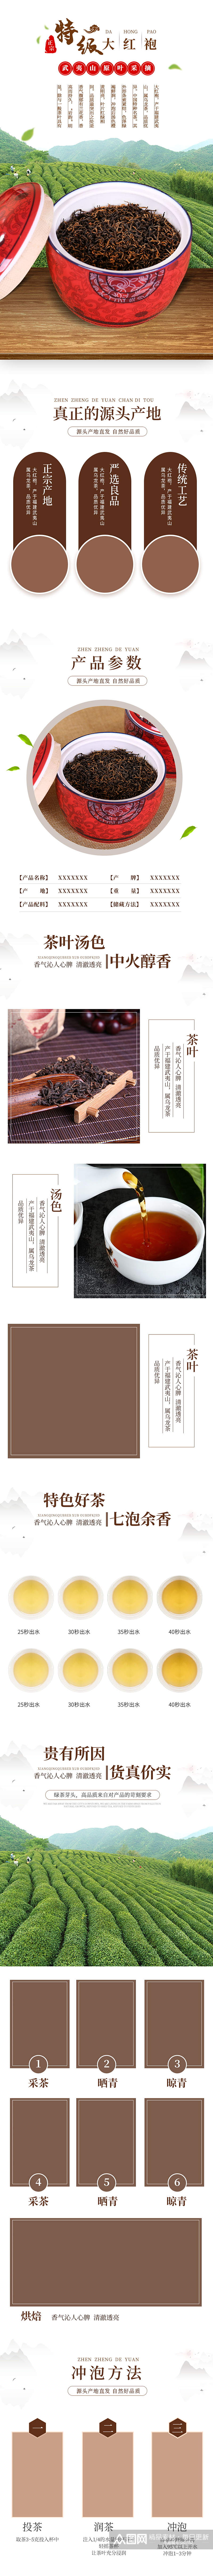 淘宝大红袍红茶绿茶详情页新鲜绿色茶品素材